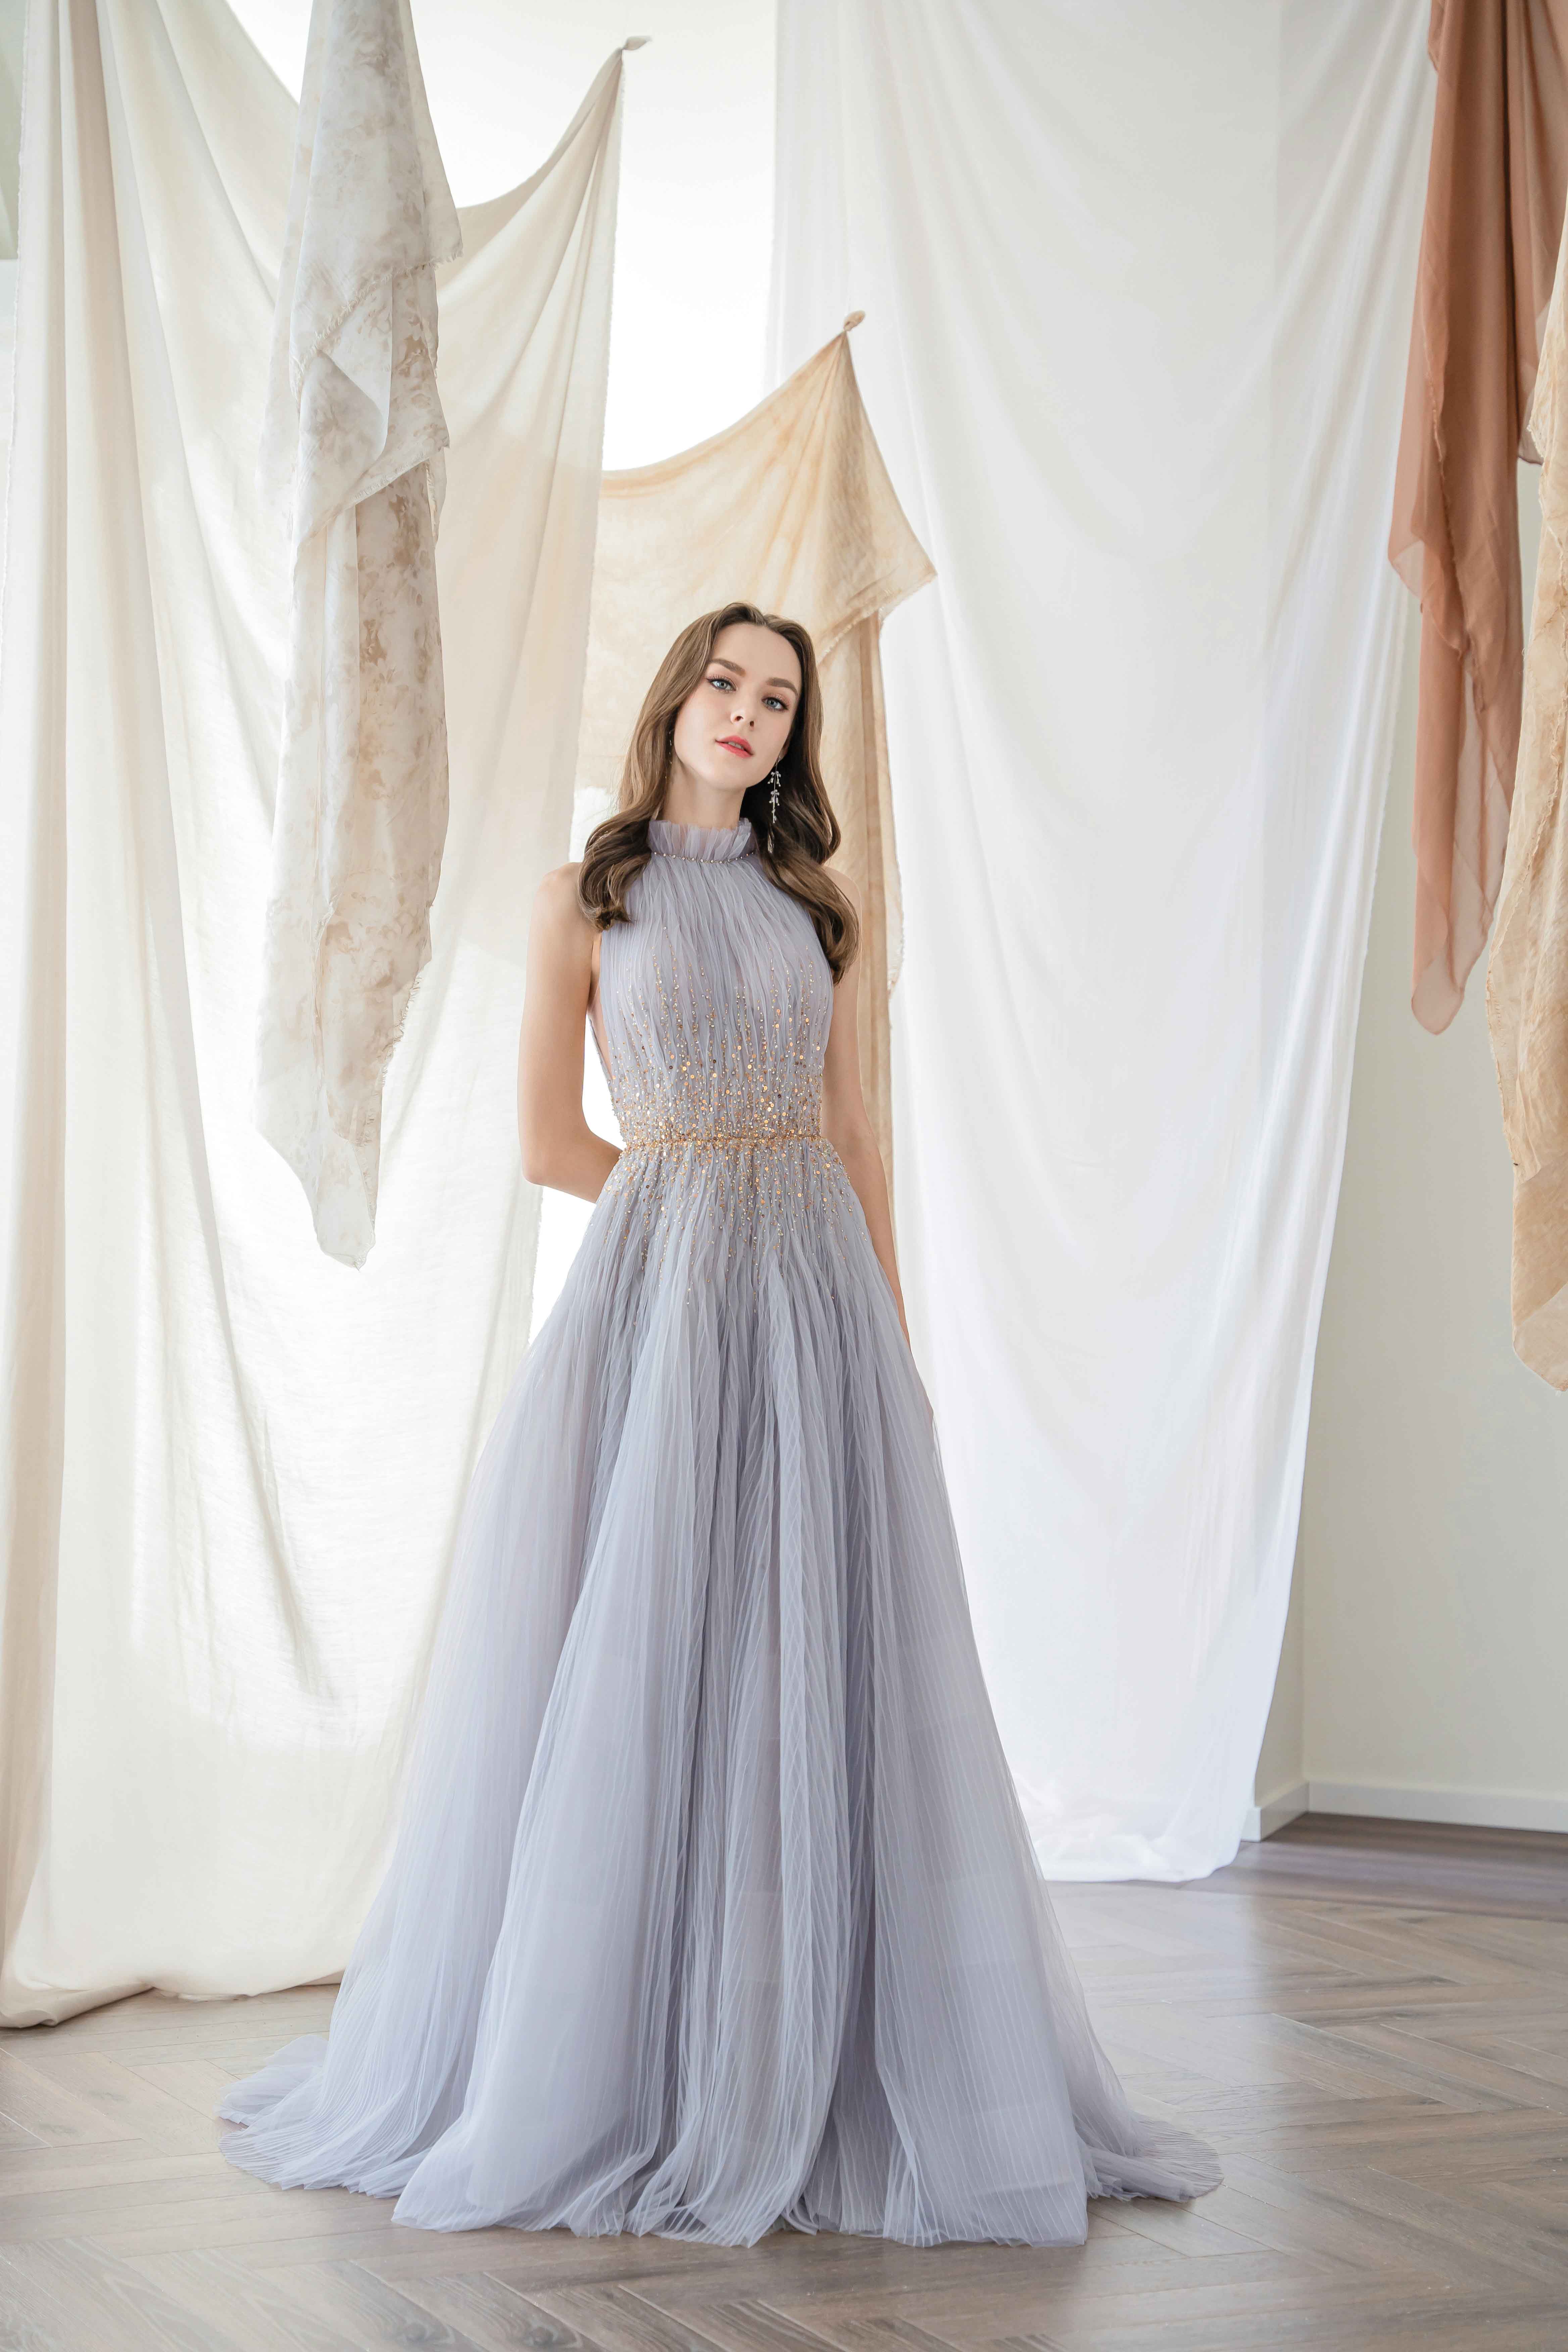 S.A. Bridal全新晚裝及婚紗系列一覽